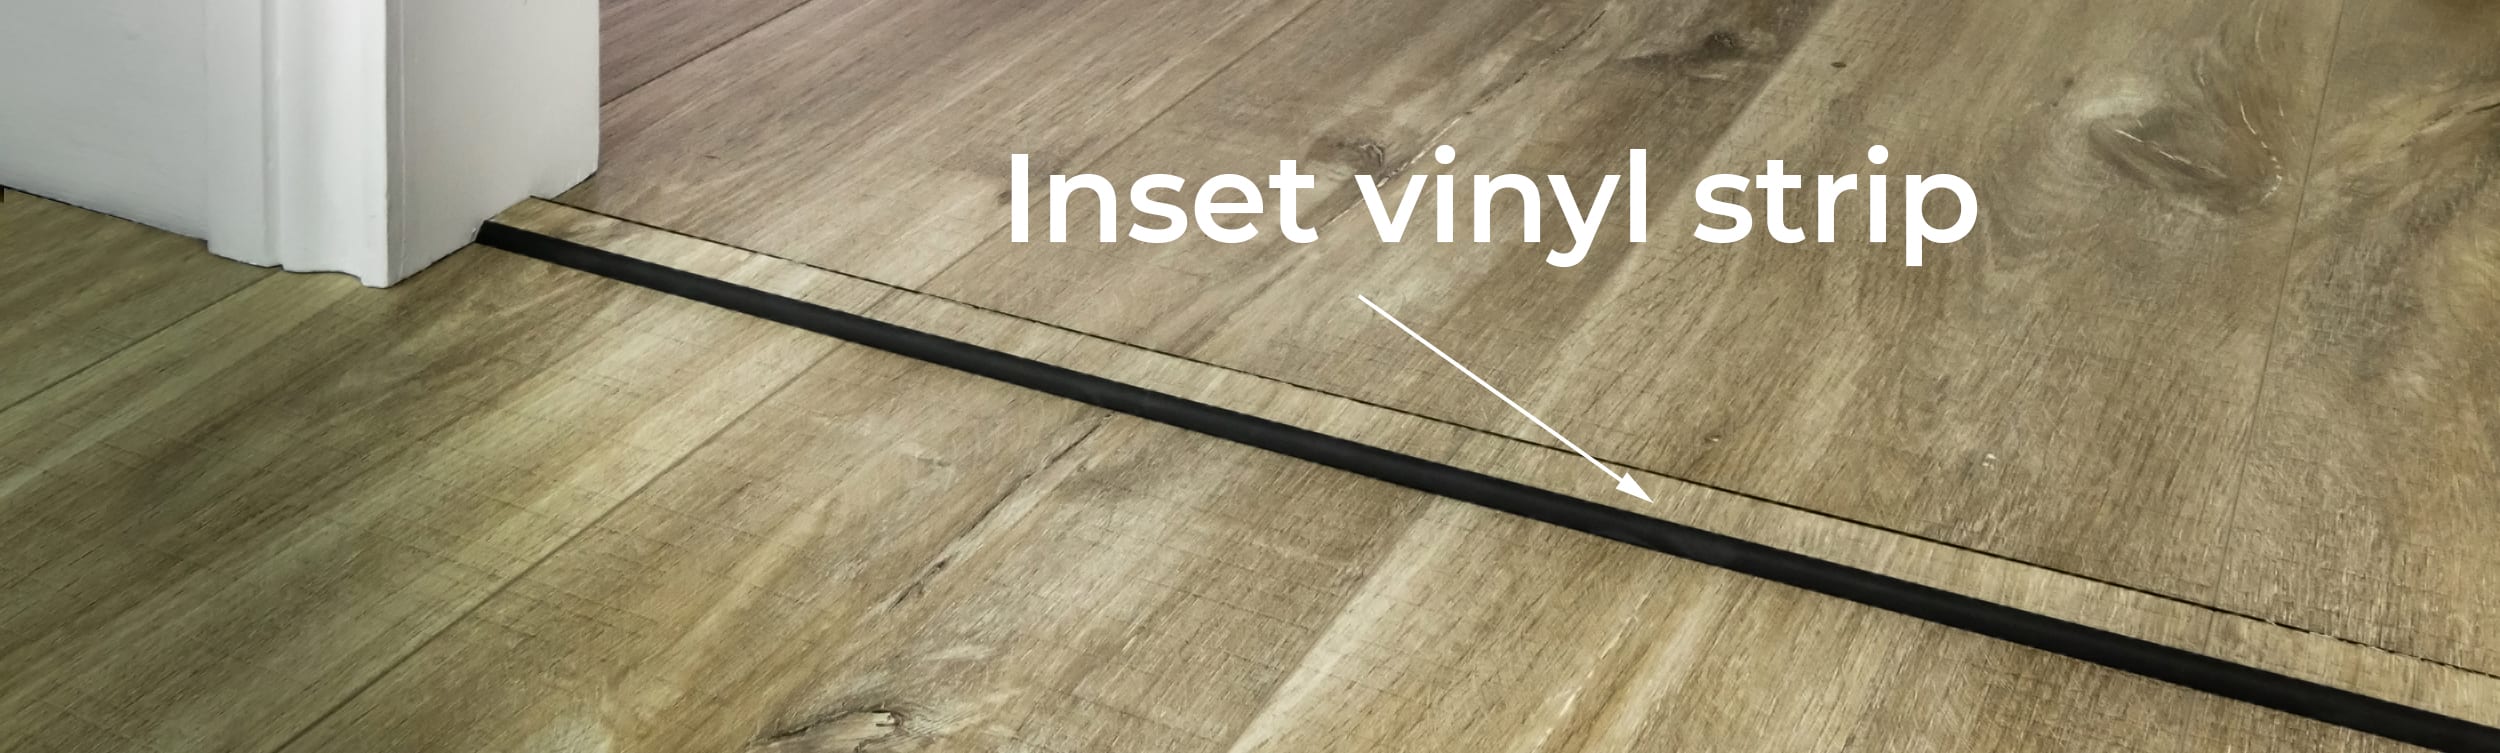 Transition Strips For Vinyl Flooring, Vinyl Floor Transition Pieces